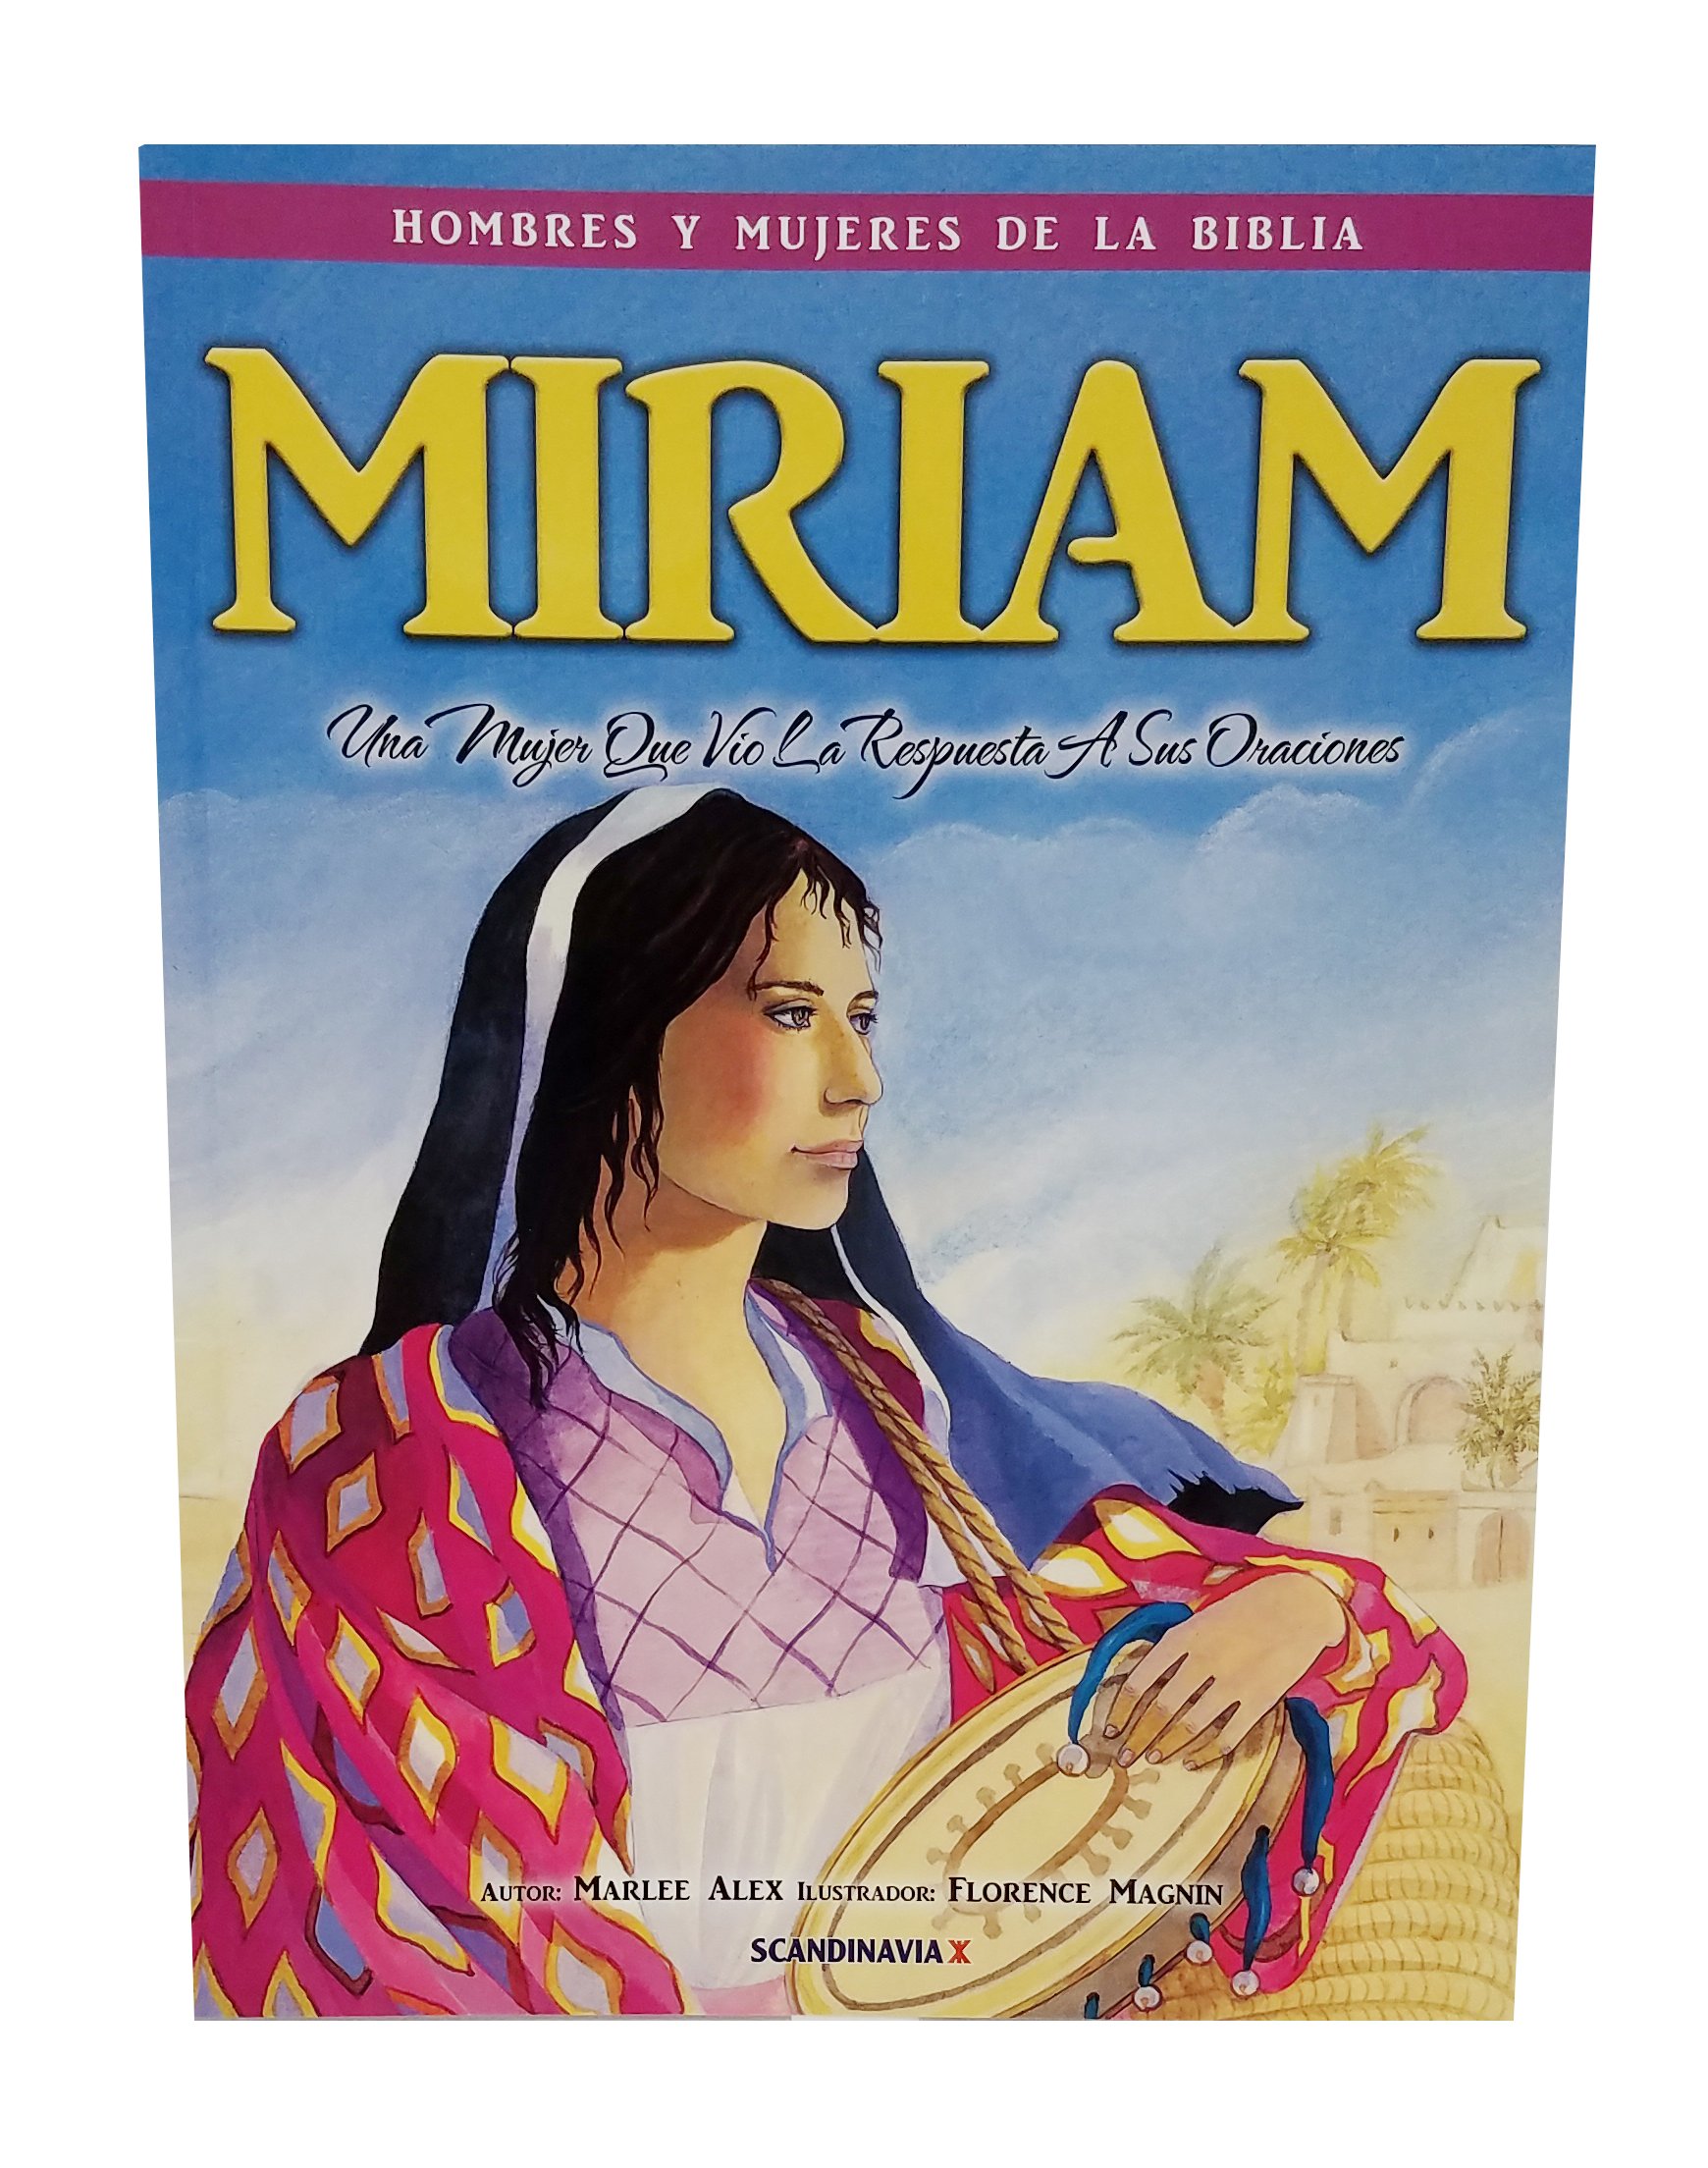 Miriam / Hombres Y Mujeres De La Biblia